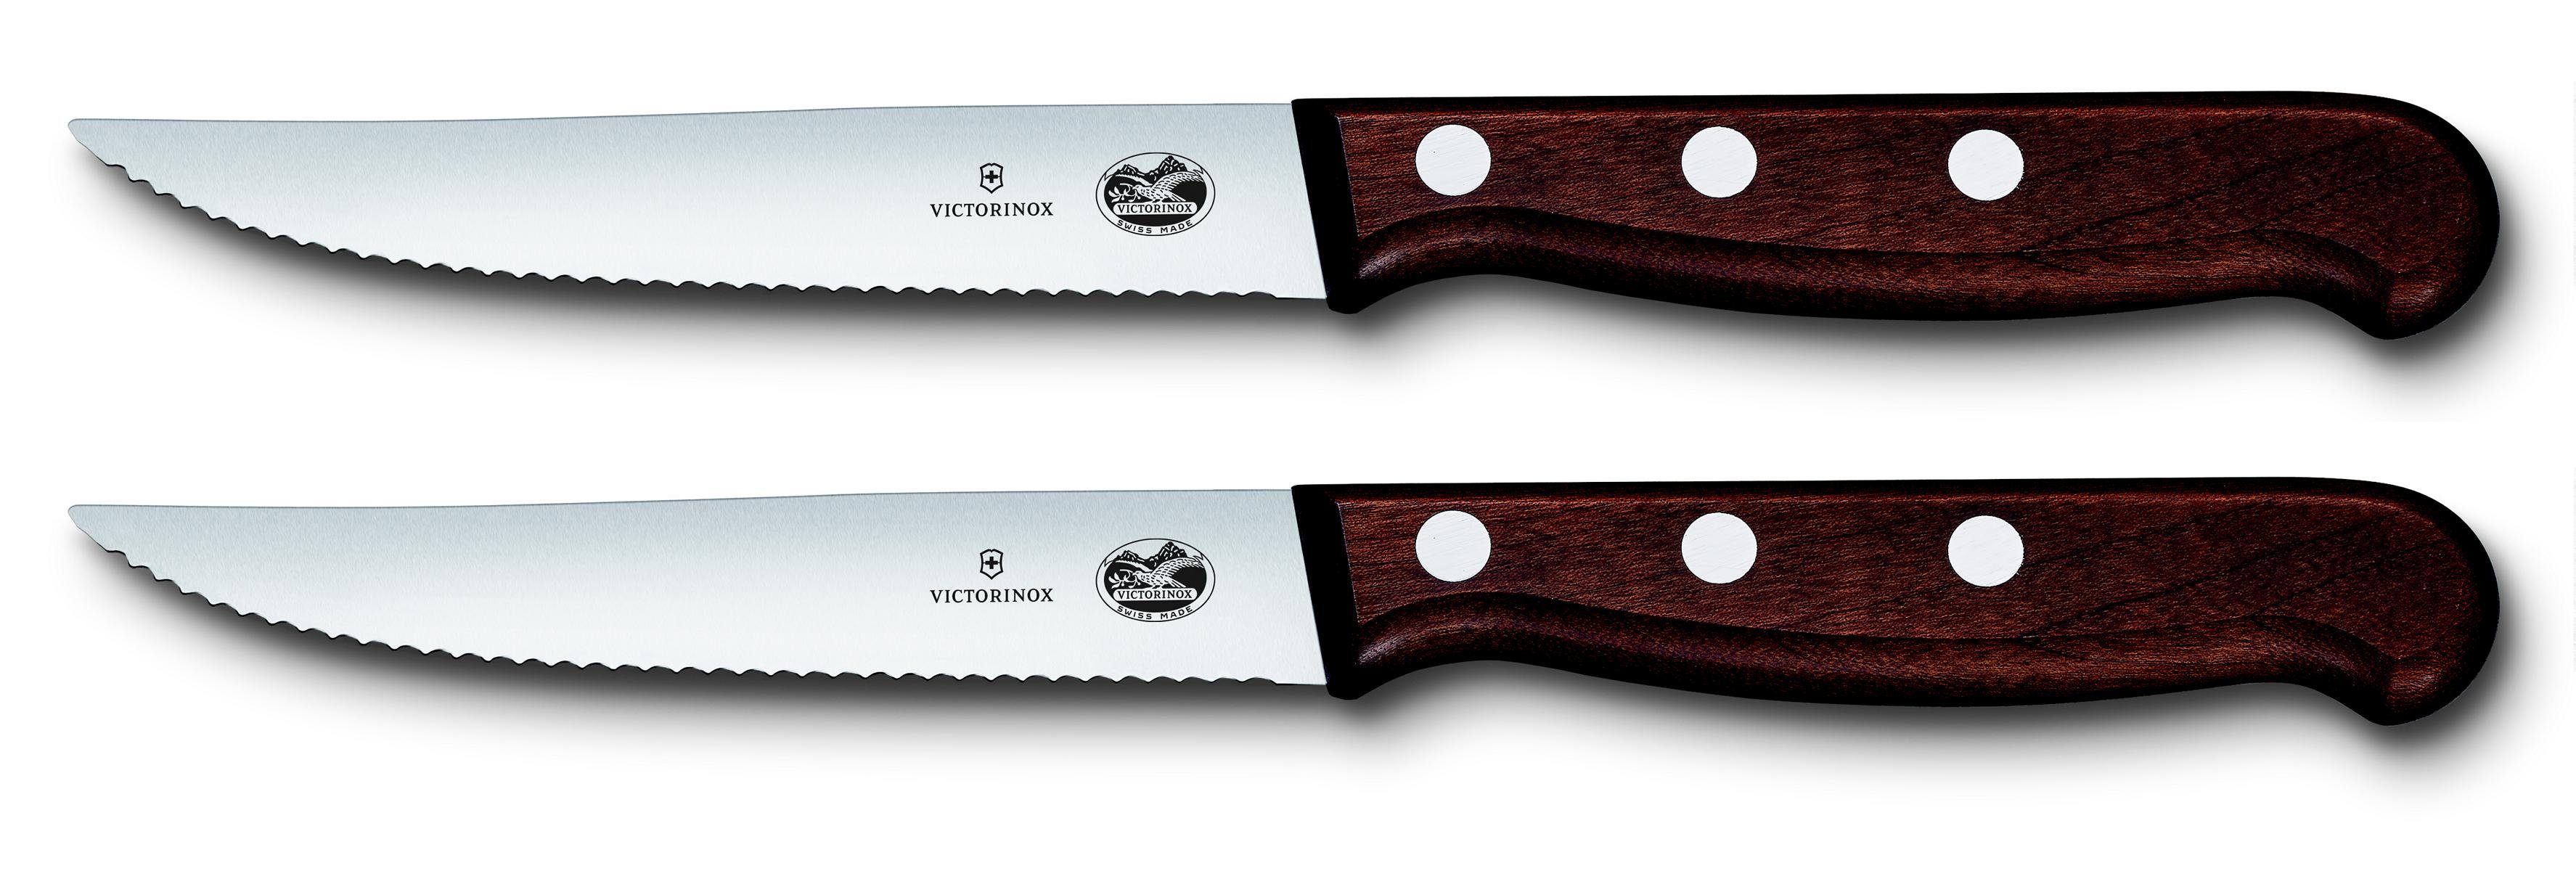 Victorinox Taschenmesser Steakmesser-Set, mod 12 cm, 2-teilig Ahornholz,Wellenschliff